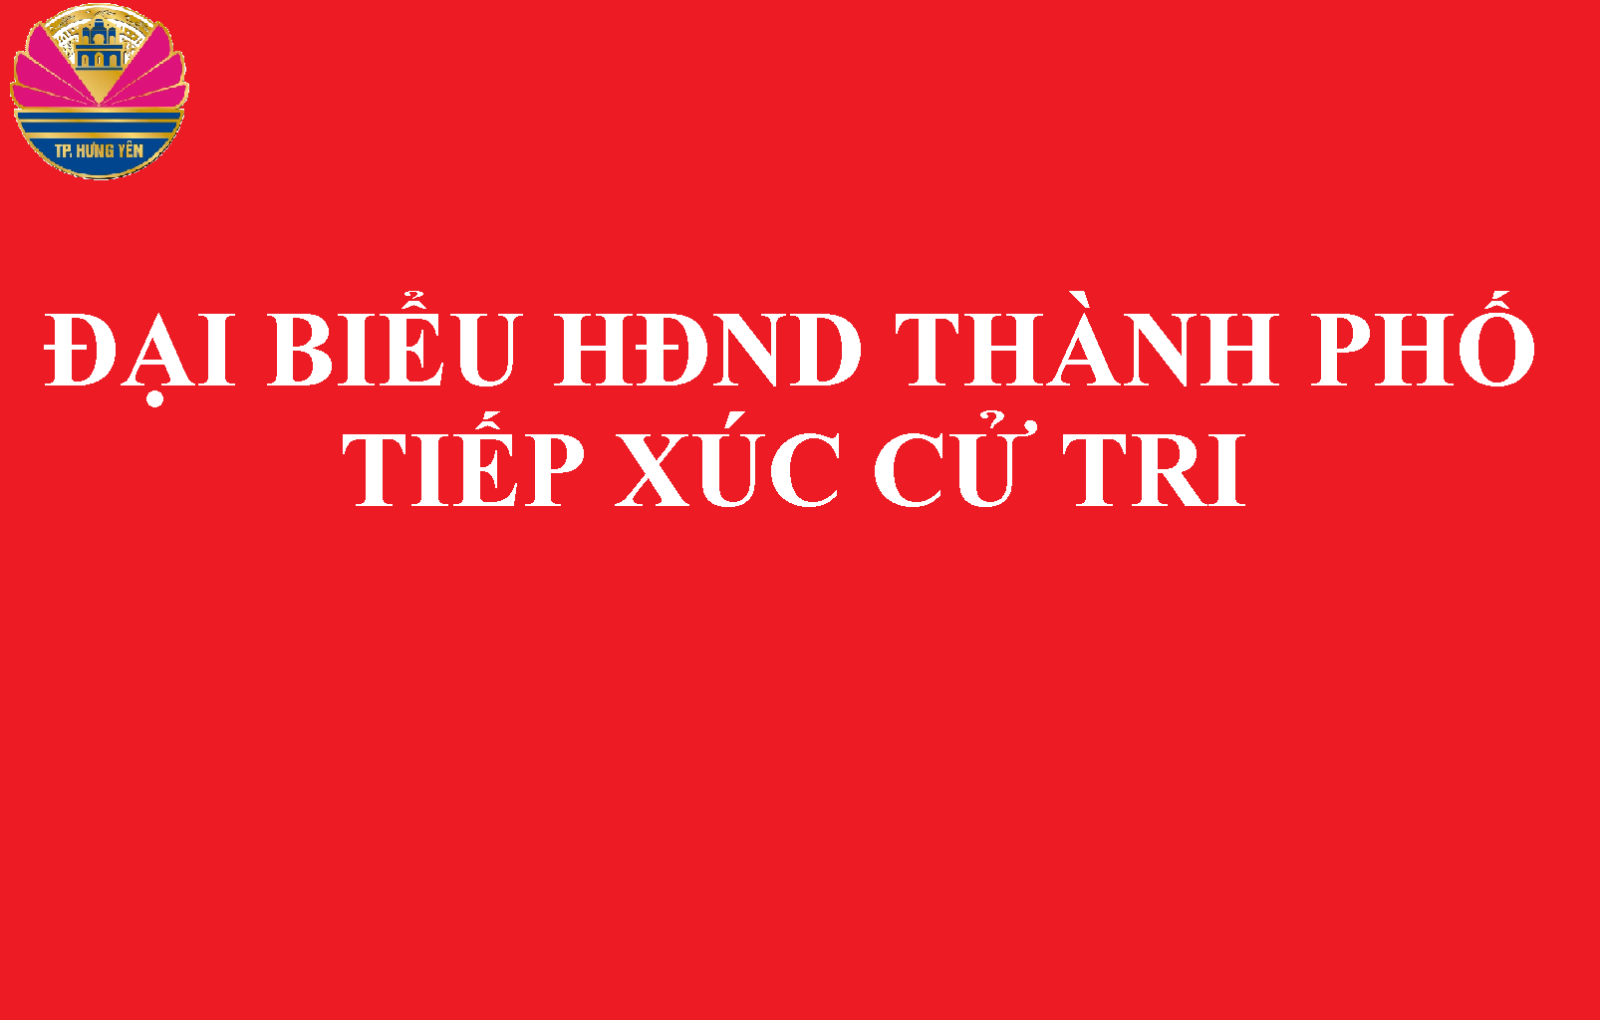 Tổ đại biểu số 7, Hội đồng Nhân dân thành phố   tiếp xúc cử tri 2 xã Phú Cường và Hùng Cường